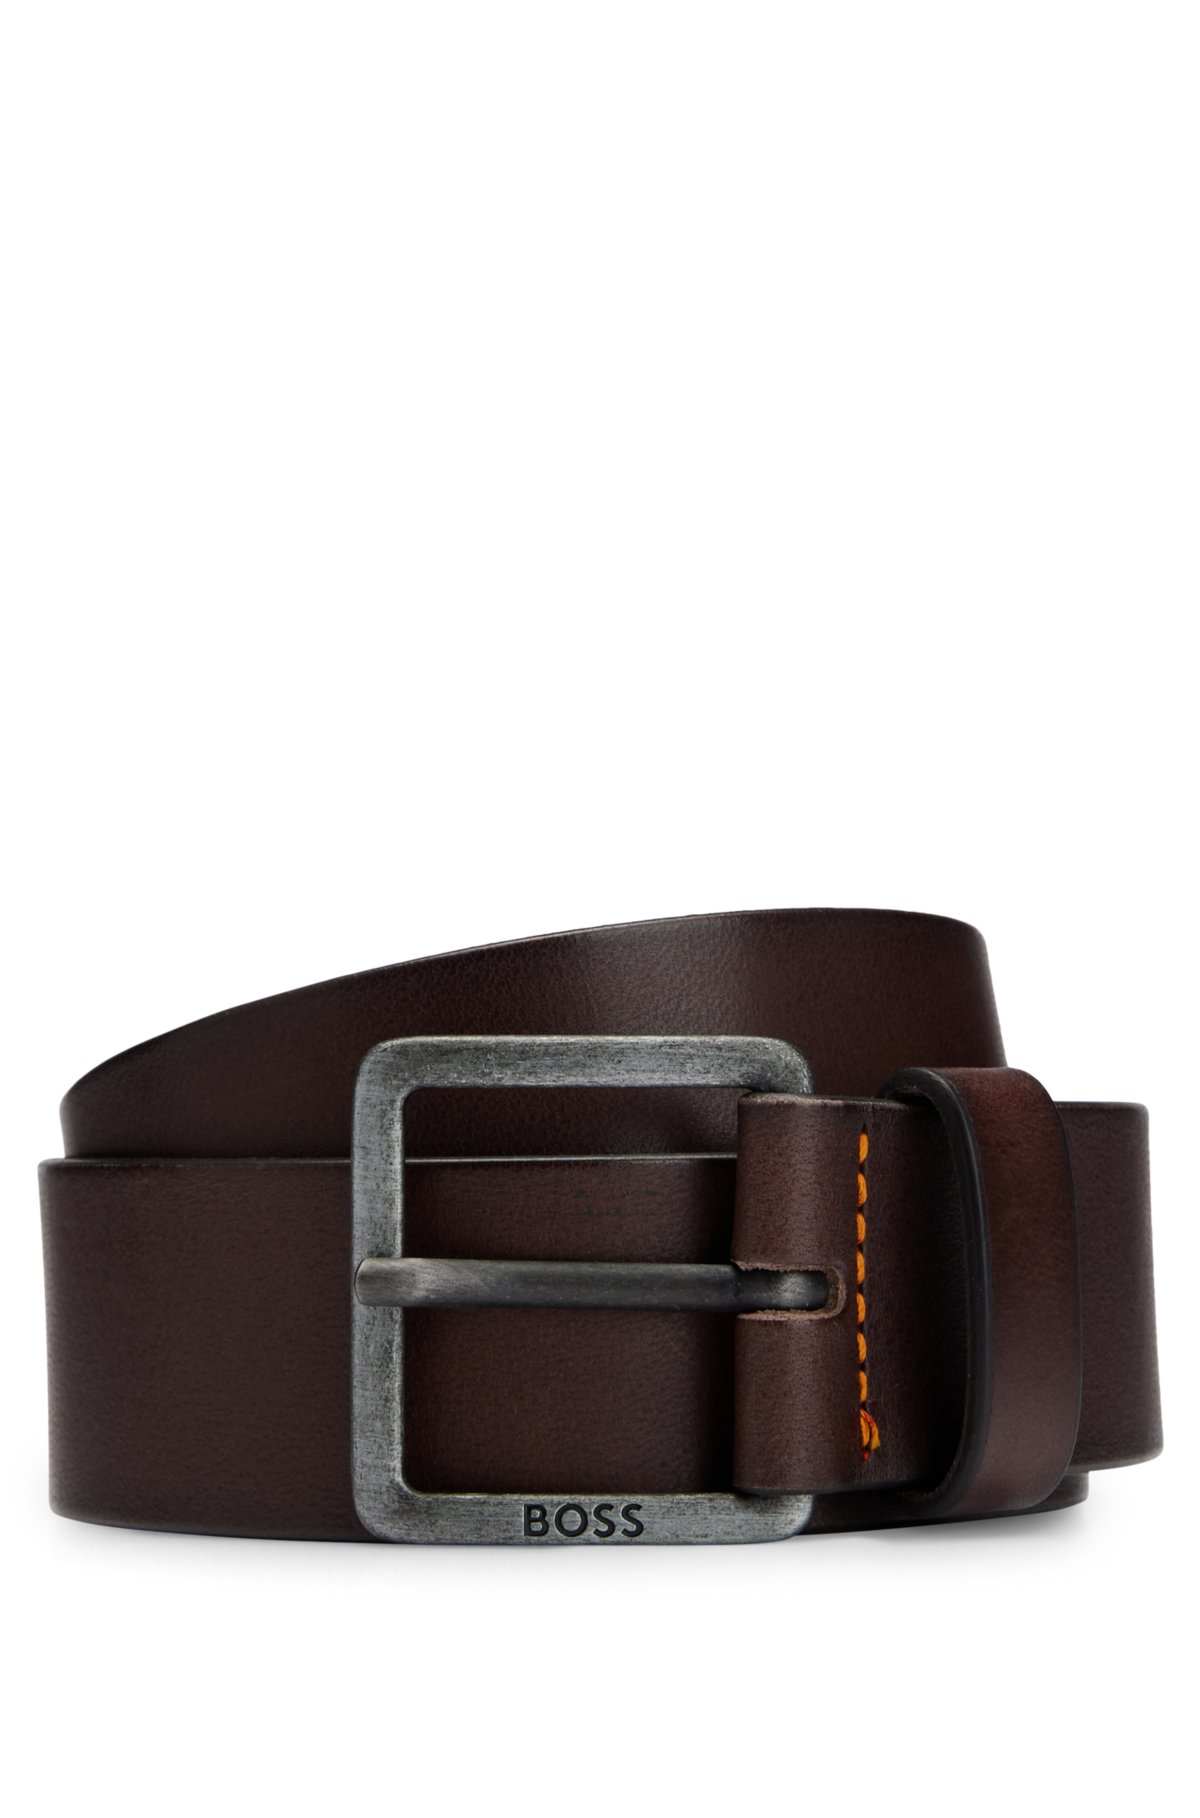 Brown Leather Belt - Ugo